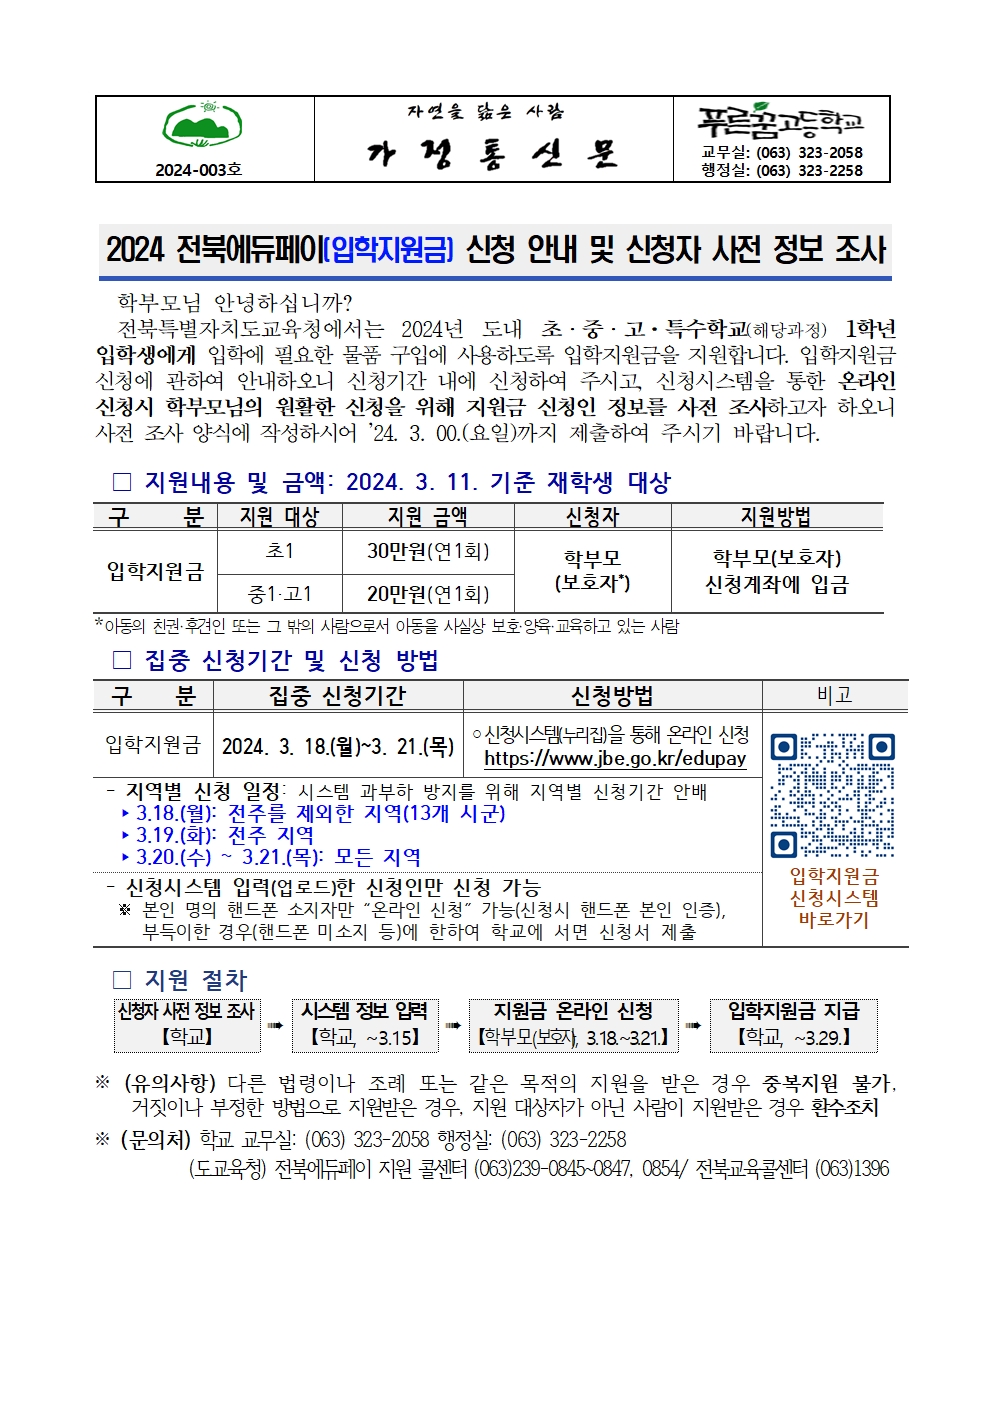 [2024-003] 2024 전북에듀페이(입학지원금) 신청 안내 및 신청자 사전 정보 조사001